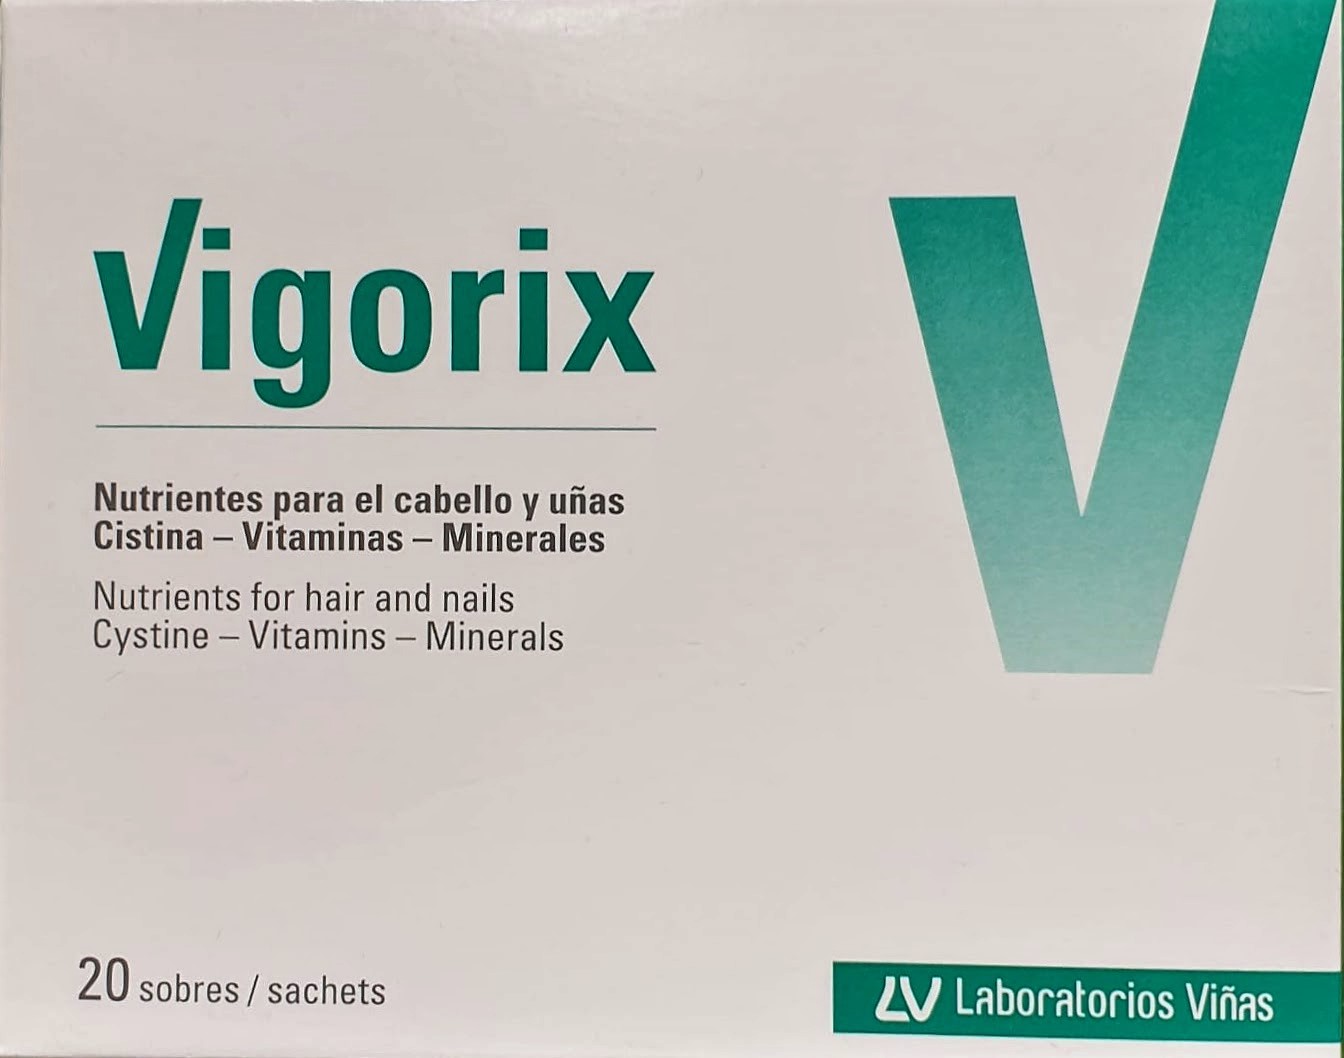 Vigorix es un complemento alimenticio con una combinación equilibrada de elementos nutritivos para la nutrición de cabellos y uñas. Vigorix contiene L-cistina, ácido pantoténico, vitamina B6, biotina, hierro y zinc